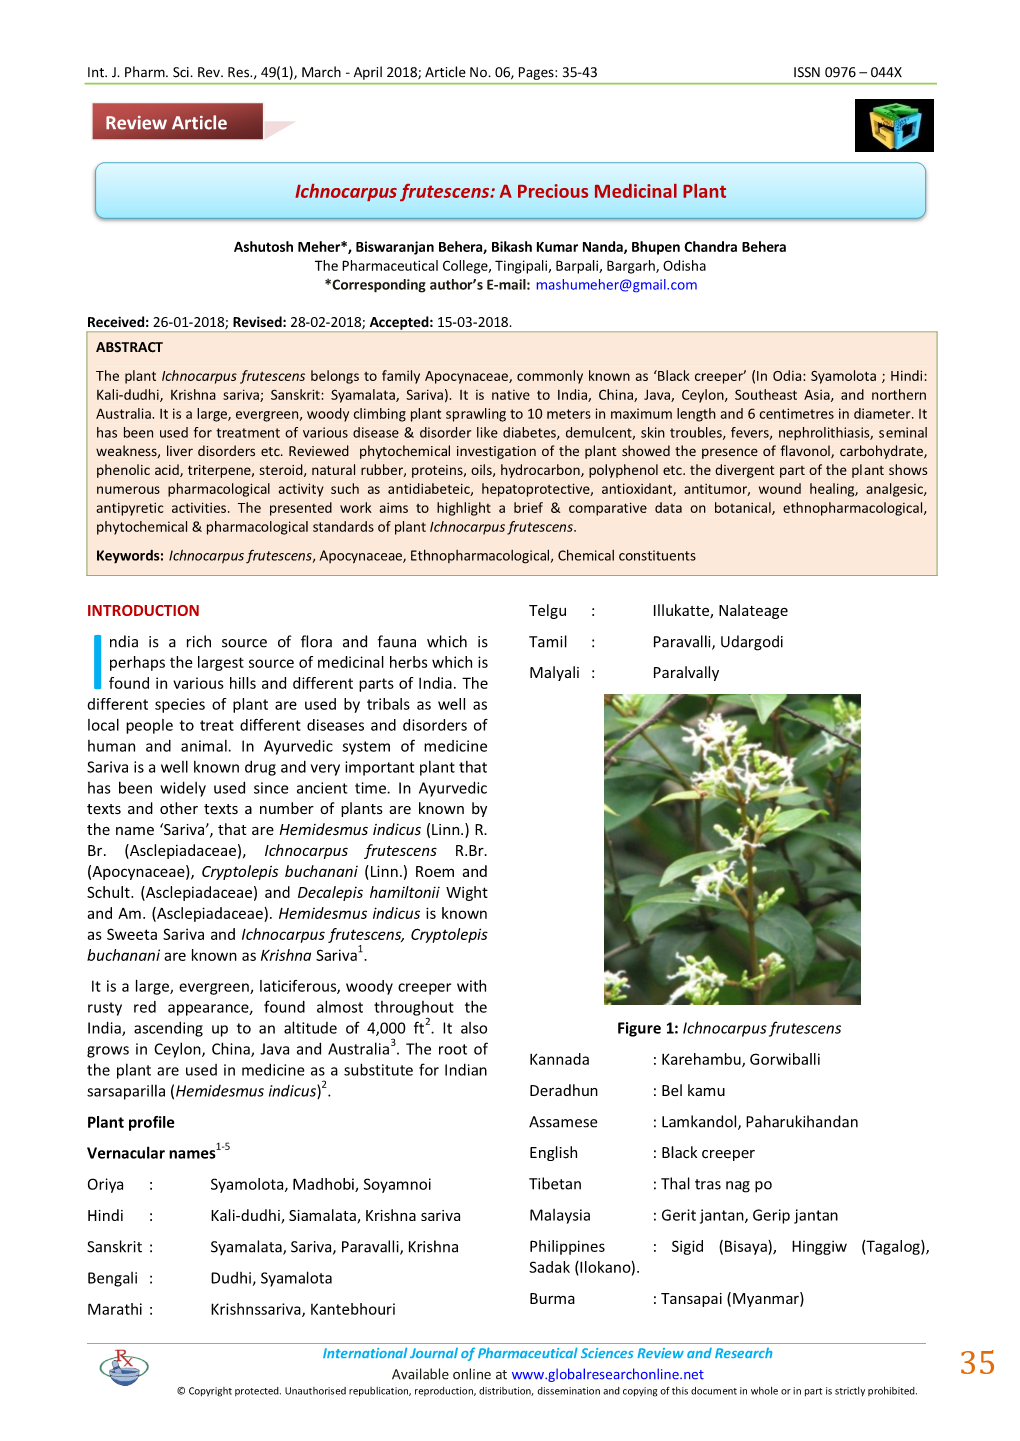 Ichnocarpus Frutescens: a Precious Medicinal Plant Review Article